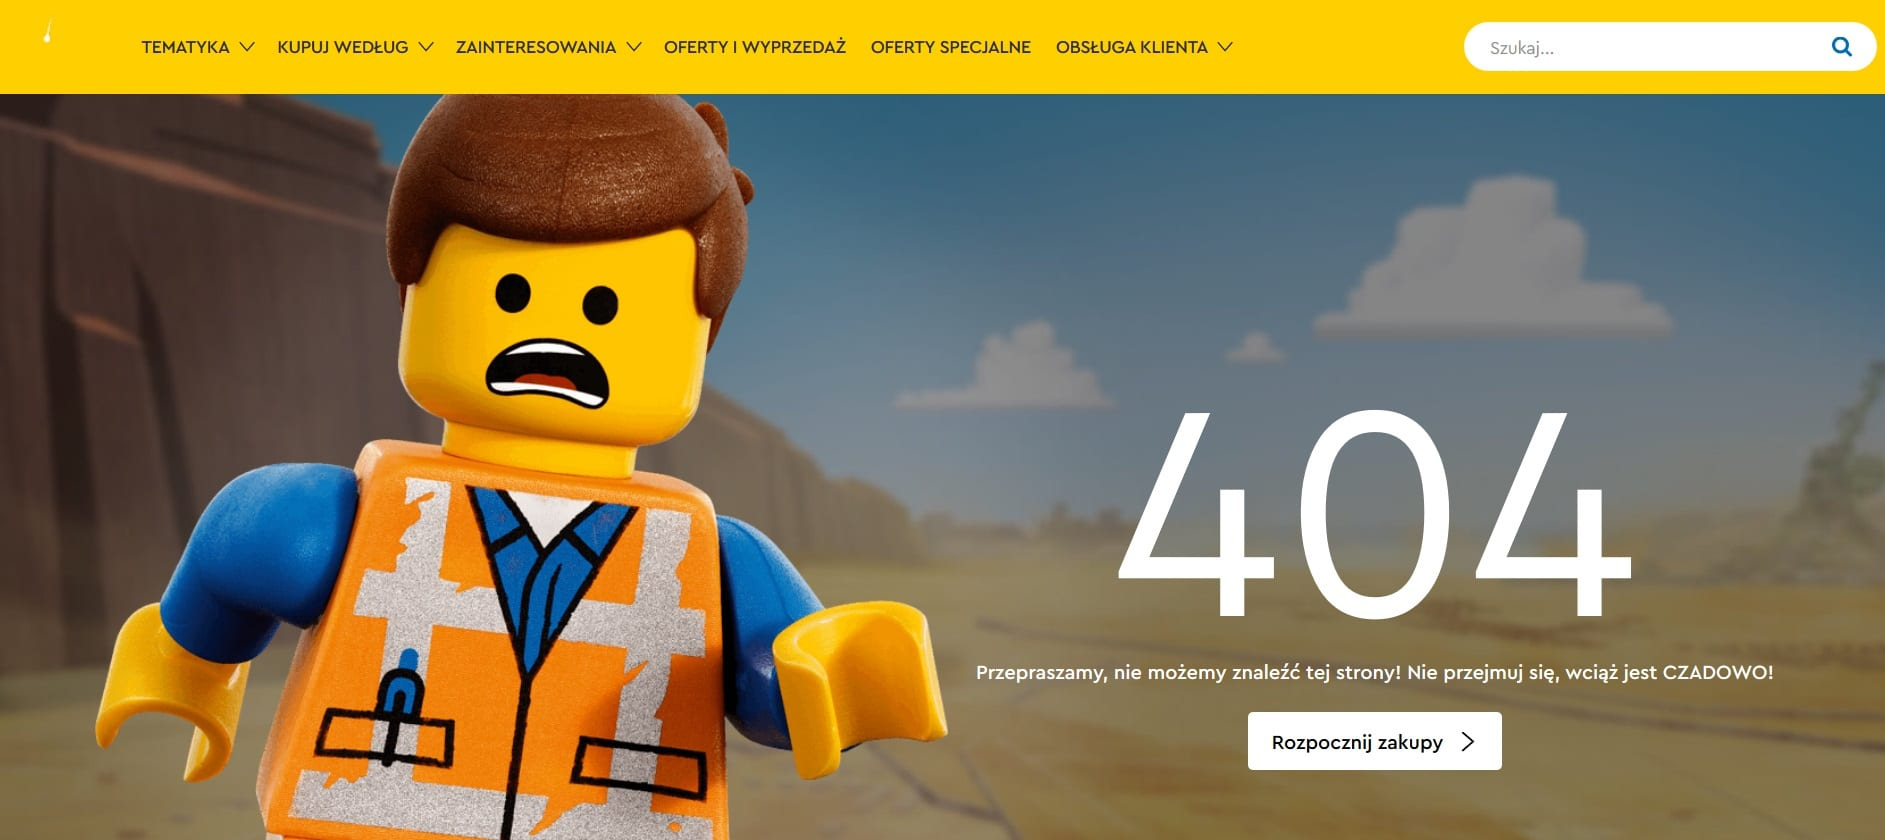 Lego też ma swoją stronę 404.